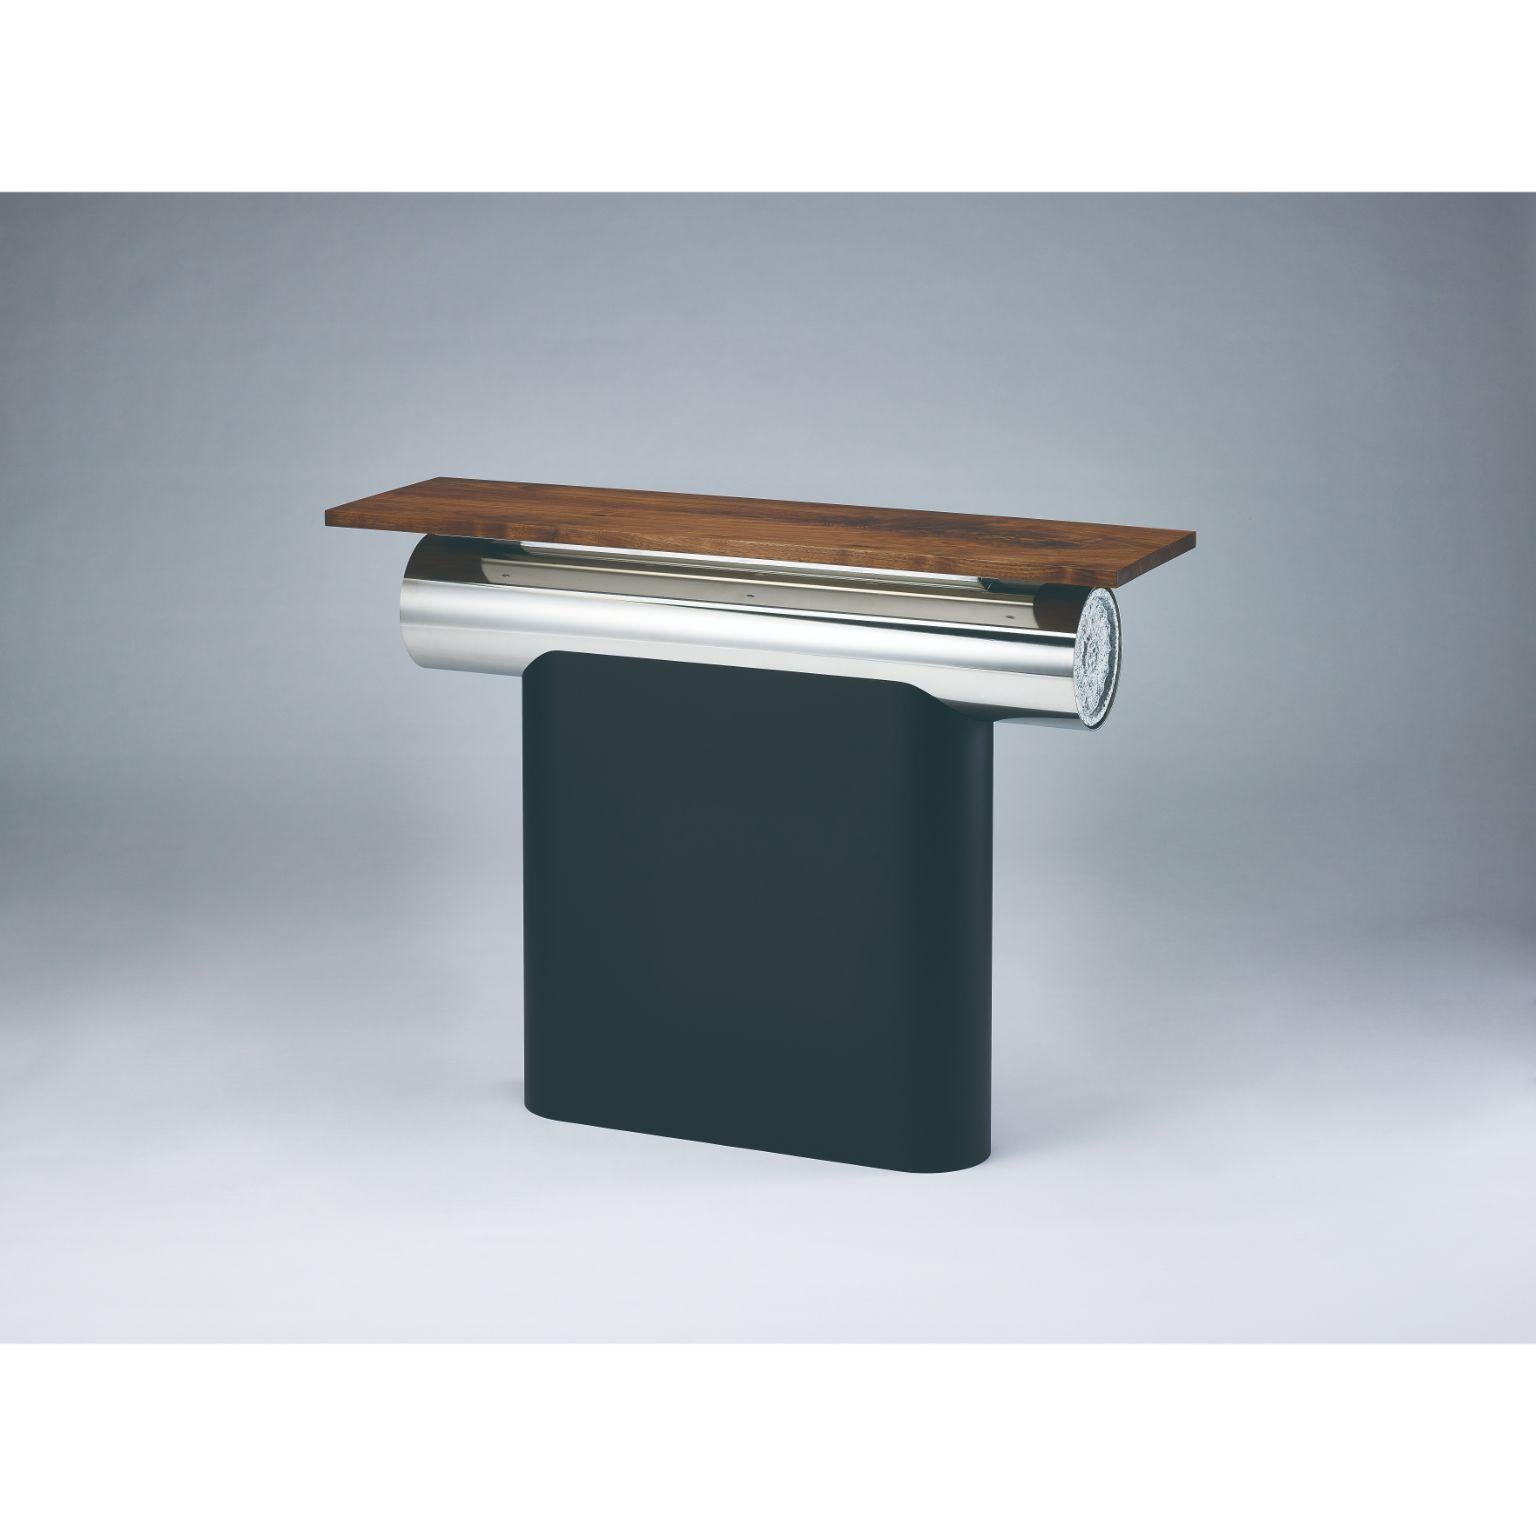 Table console Heritage Gwol par Lee Jung Hoon
Dimensions : D98 x L28 x H76 cm 
Matériaux : noyer, granit, acier inoxydable, acier.

La série Heritage, créée par le designer Lee Jung-hoon, est une collection de meubles modernes sculpturaux. Les